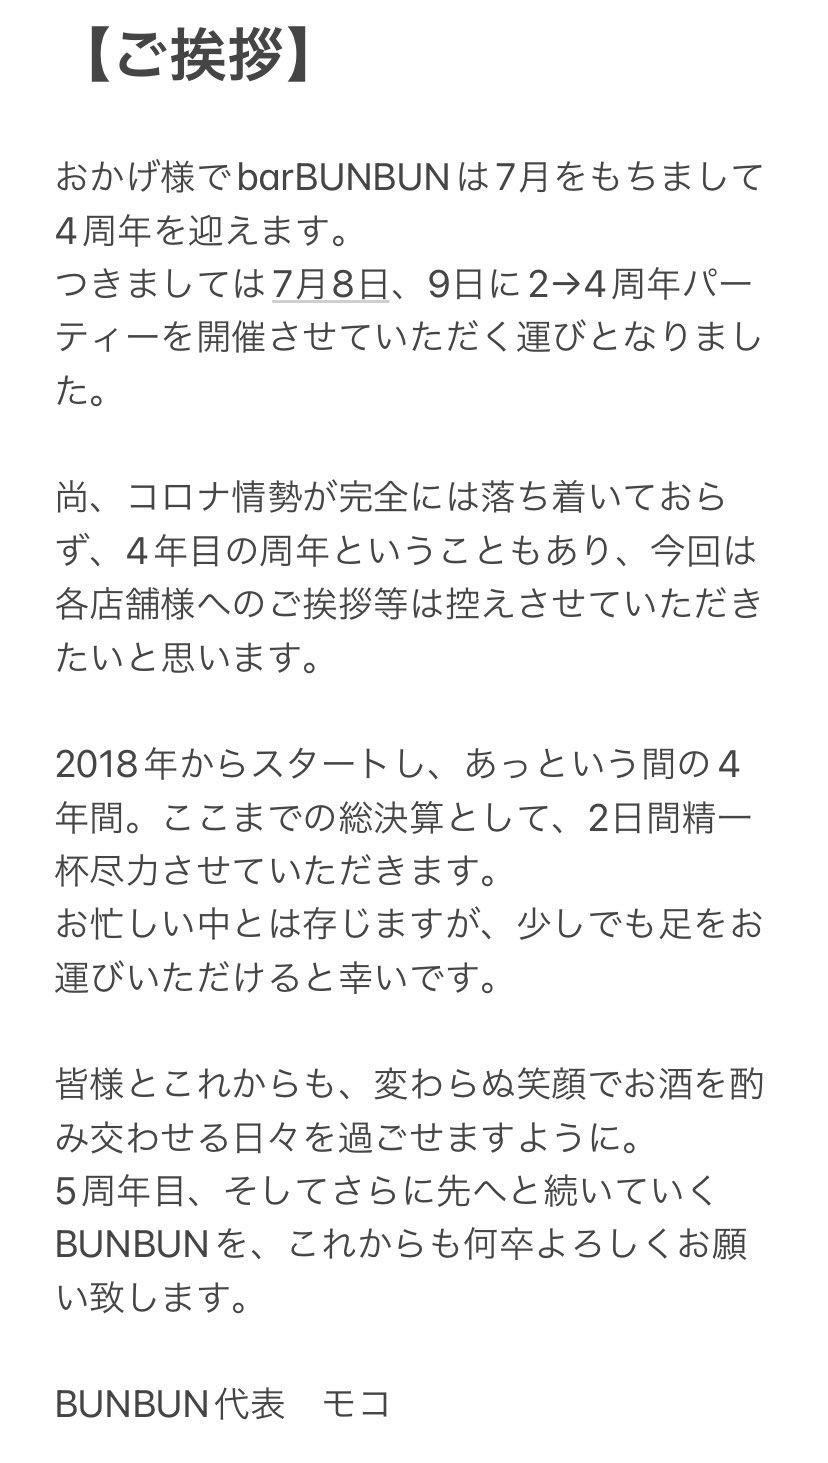 BUNBUN2→4周年パーティー